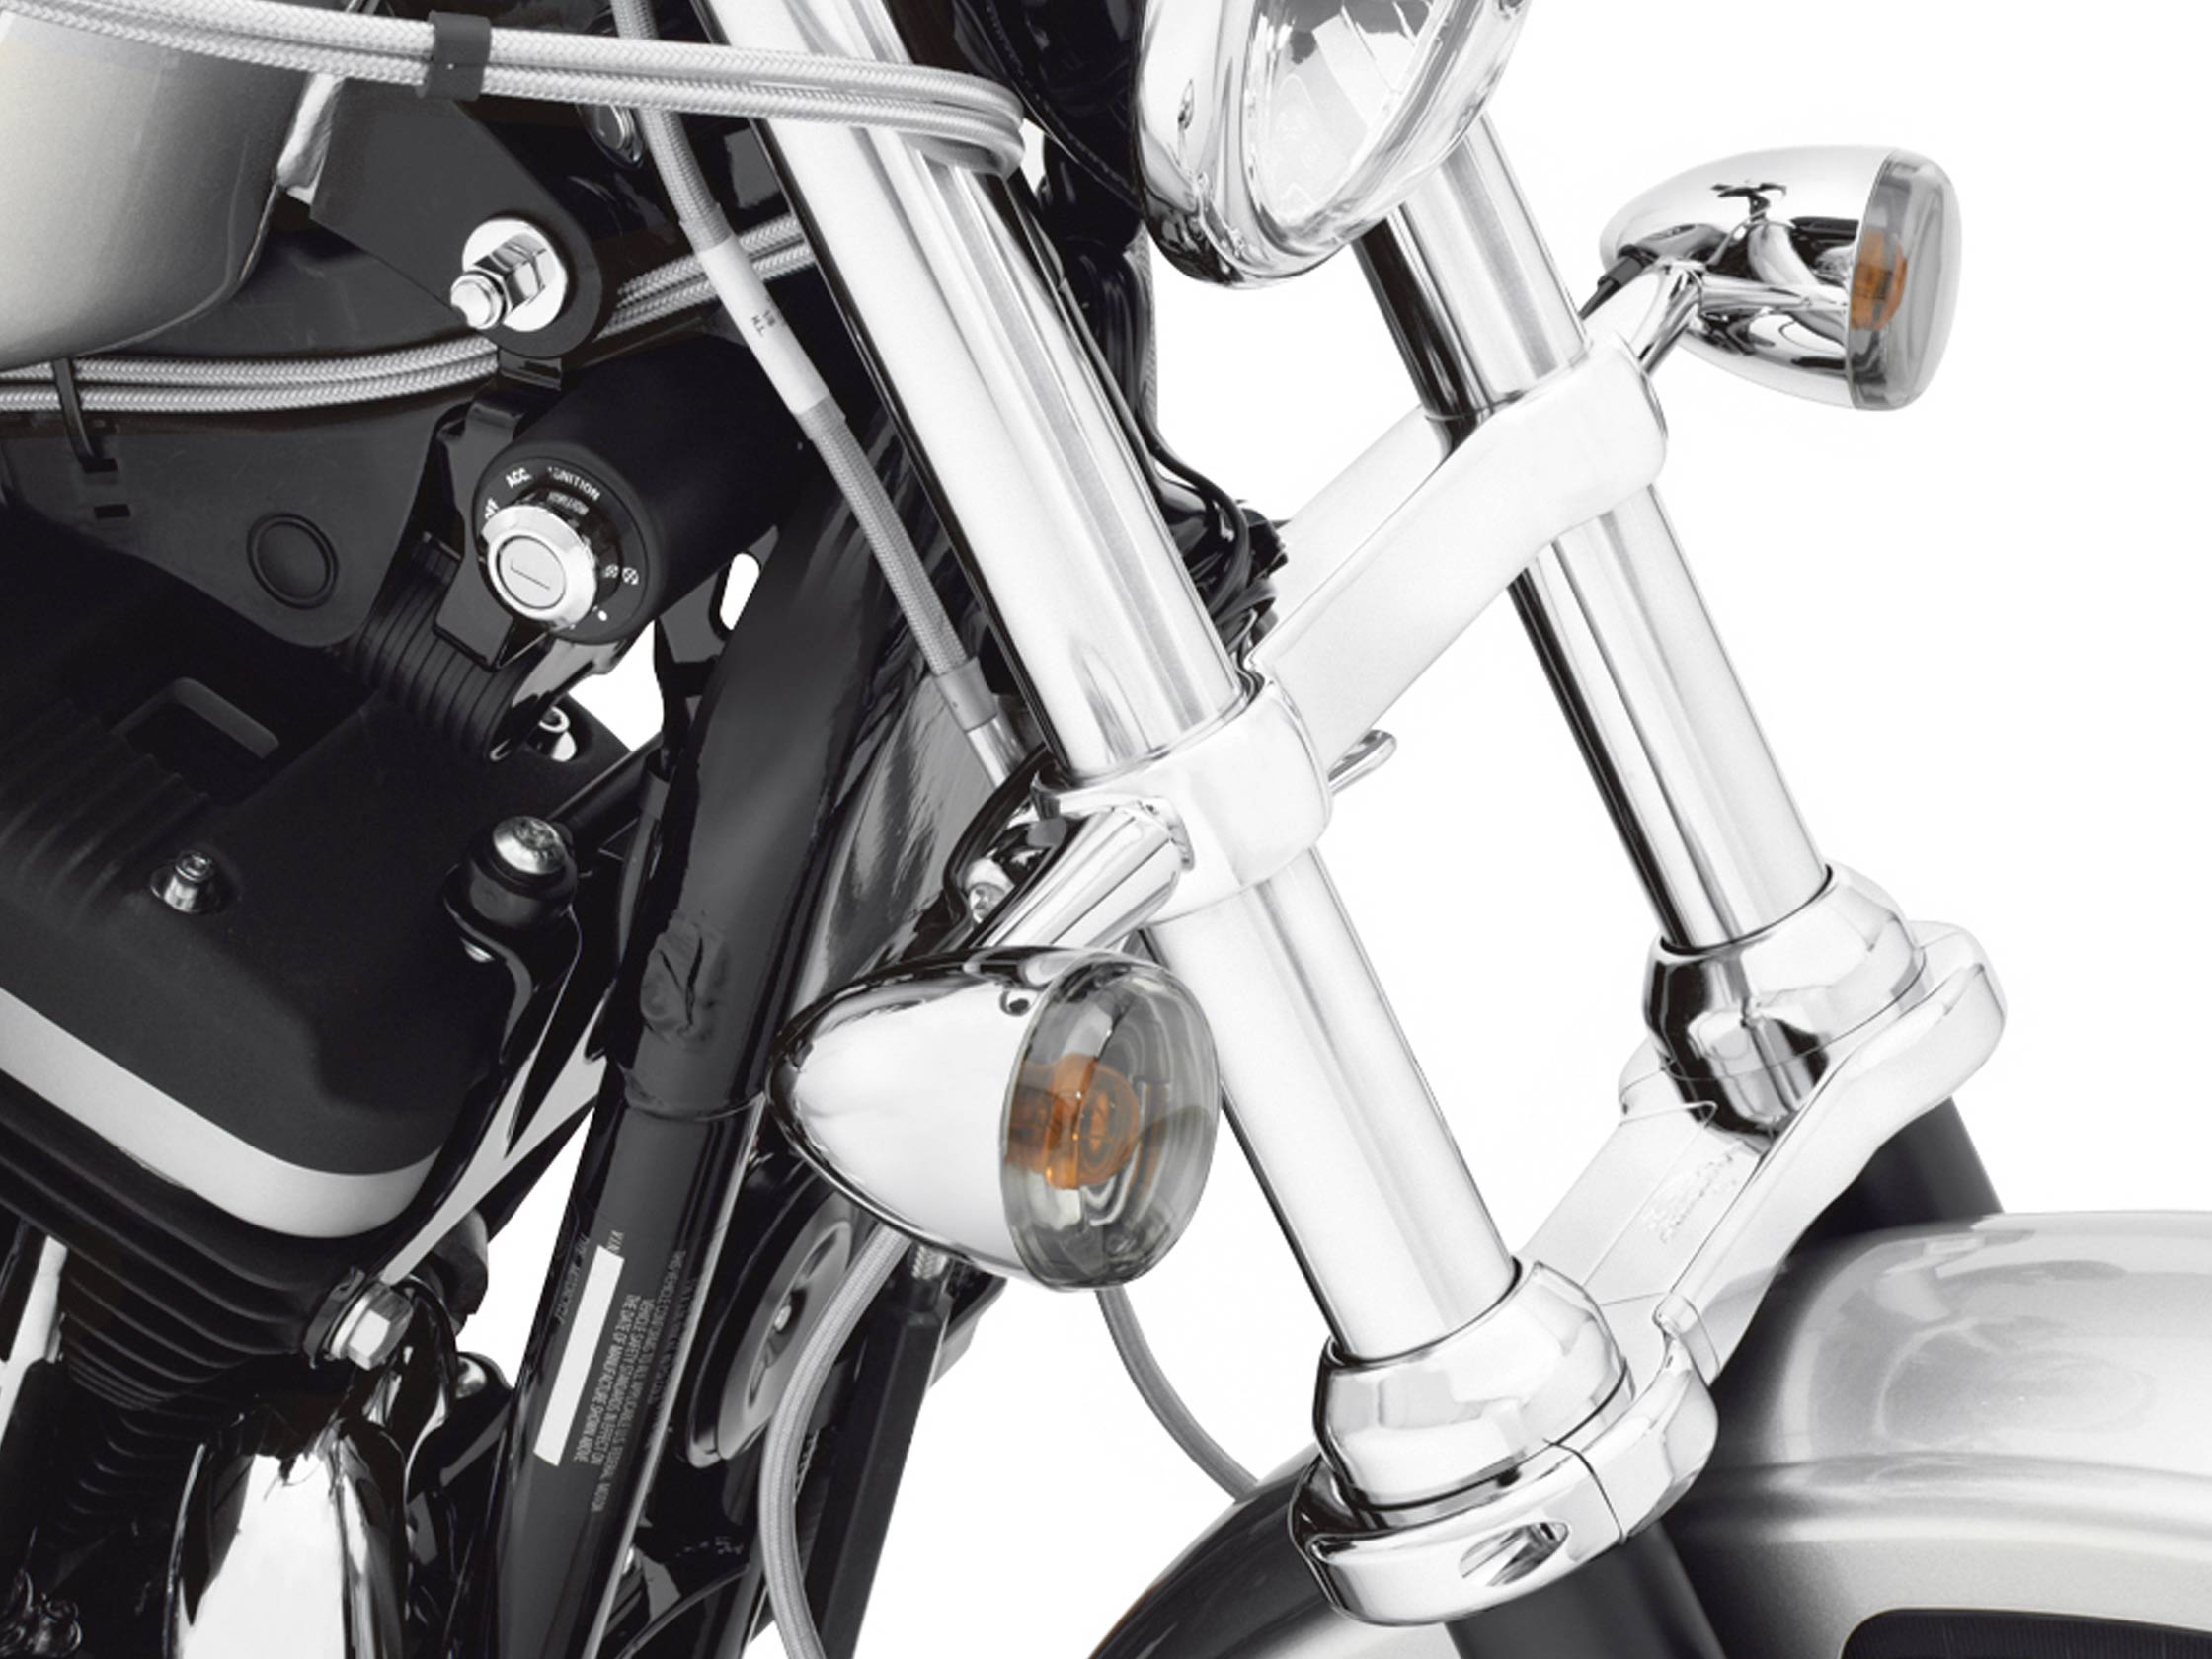 BLINKERVERLEGUNG VORN- Chrom - Dyna - Sportster 68517-94A / Blinker /  Multi-fit / Teile & Zubehör / - House-of-Flames Harley-Davidson